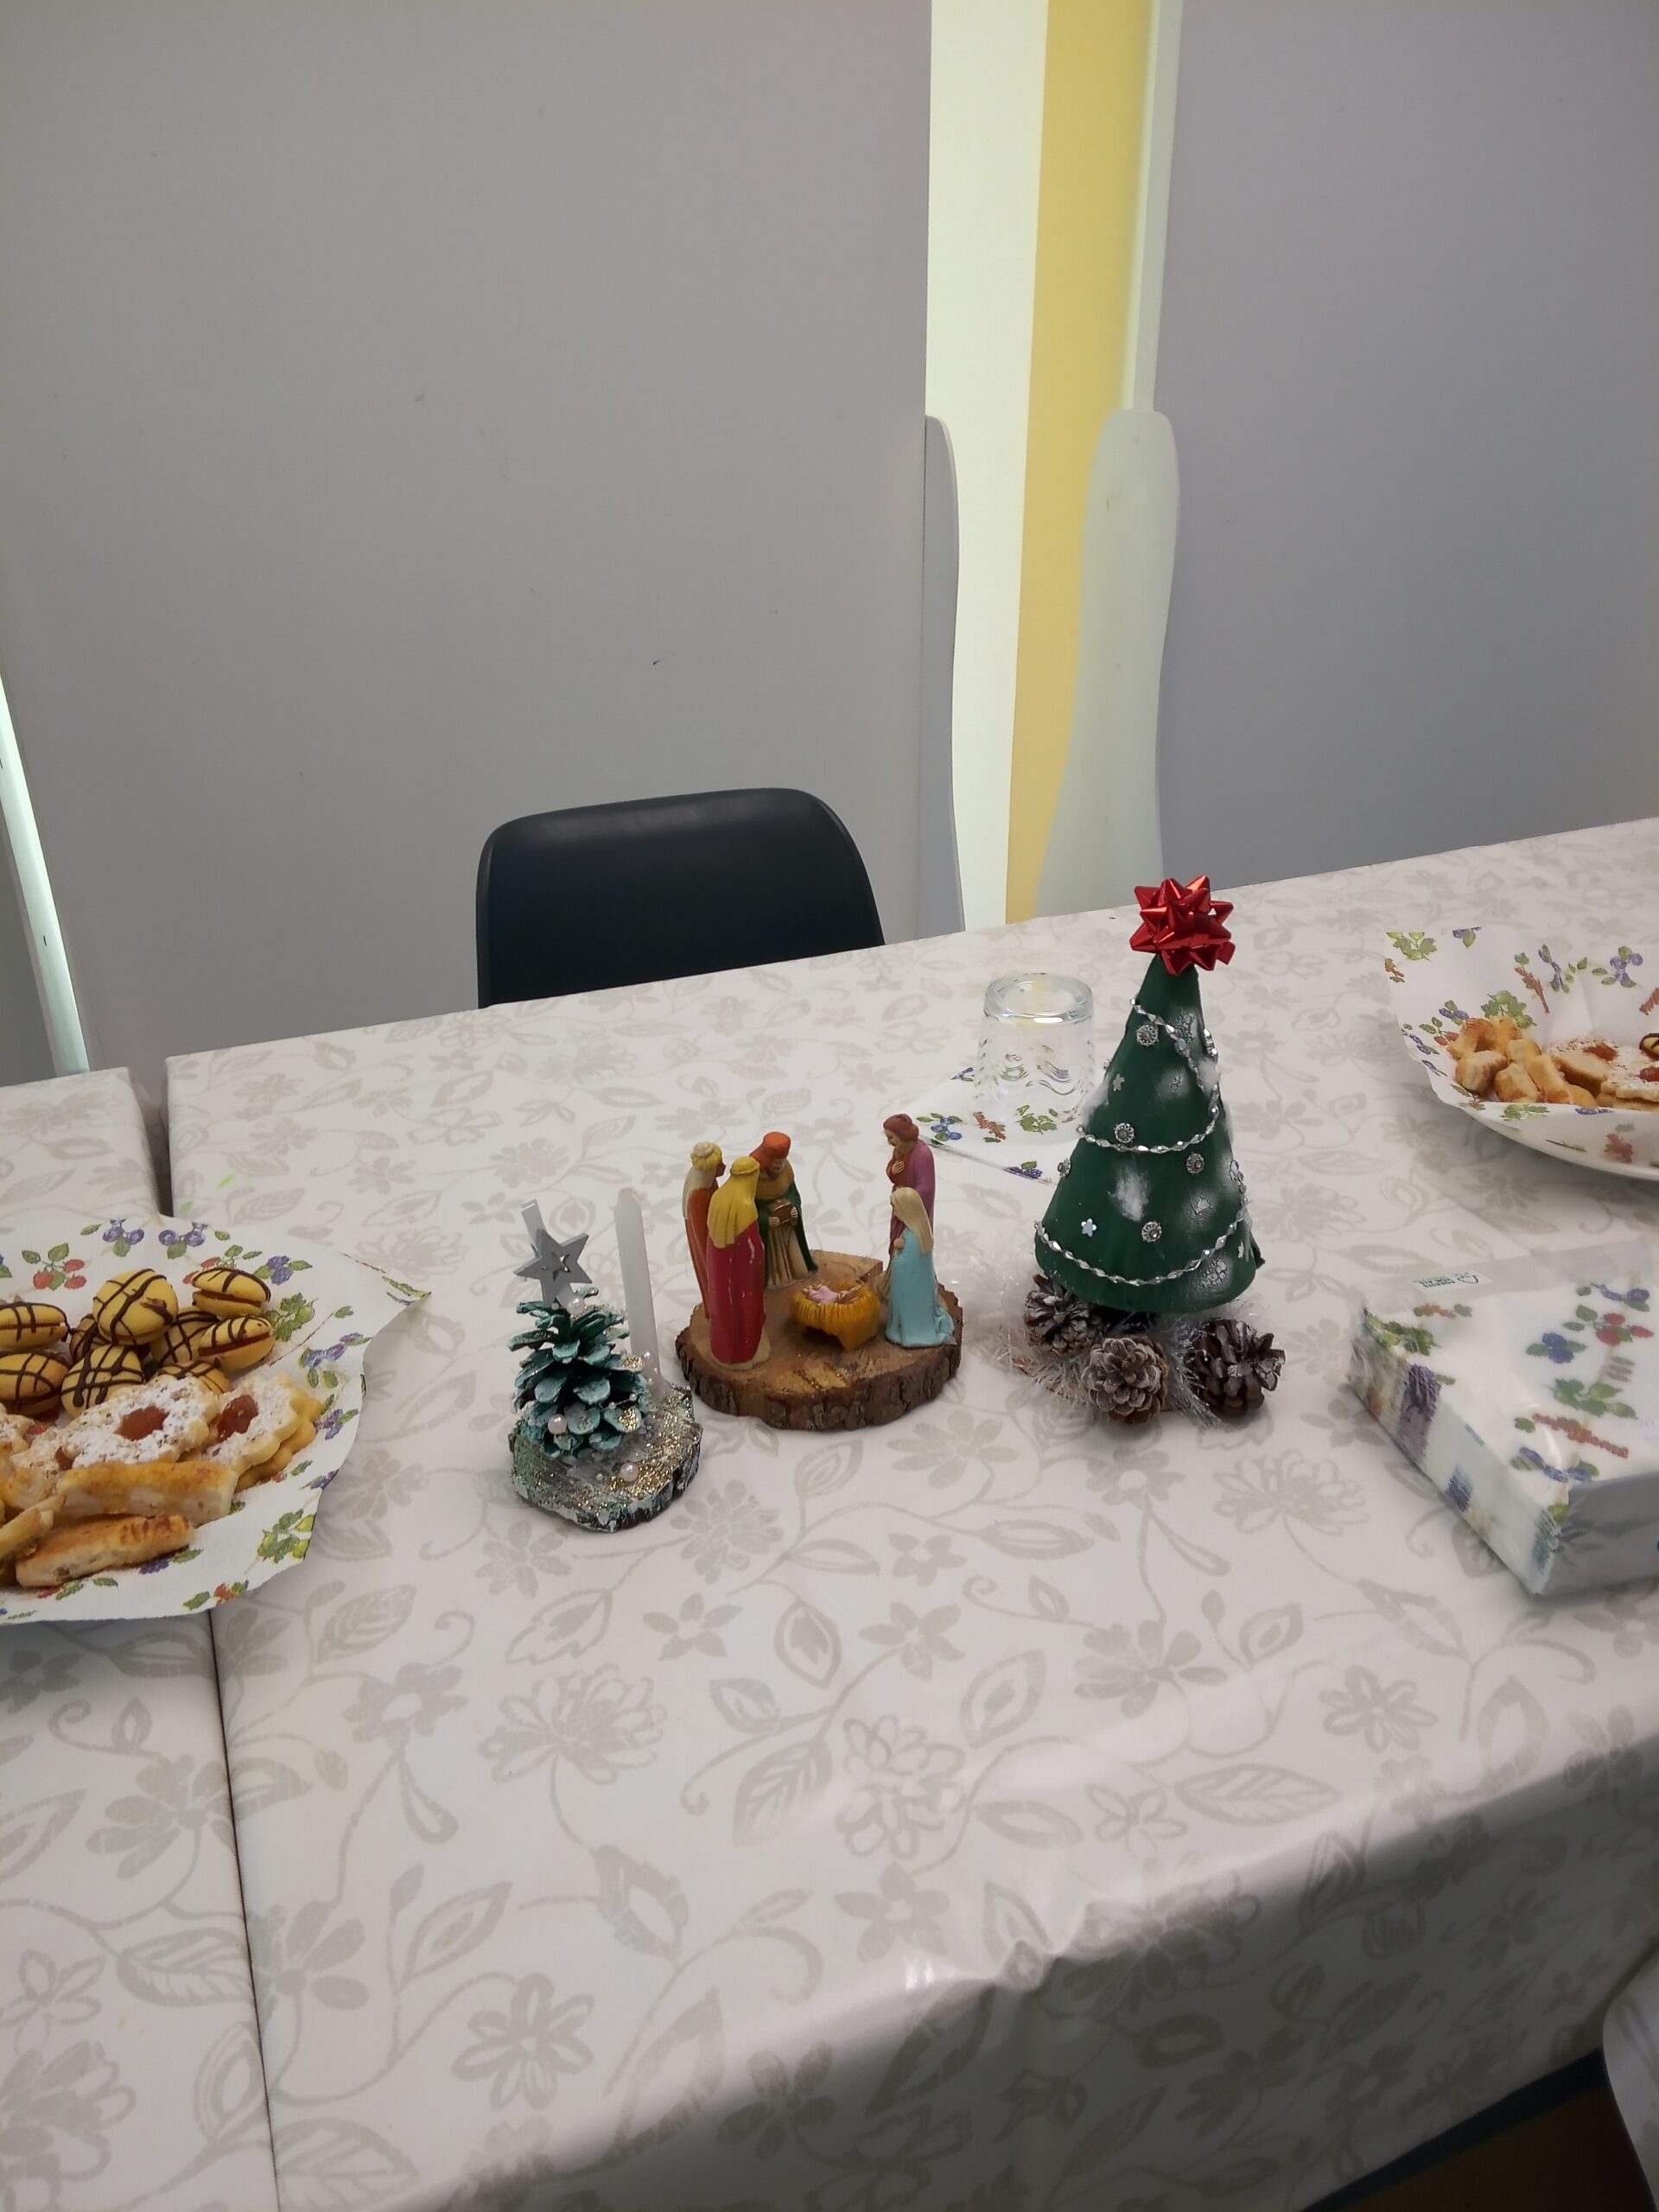 A képen az ünnepi asztalon lévő sütemények, kézzel készített karácsonyfák és egy jászol látszik.